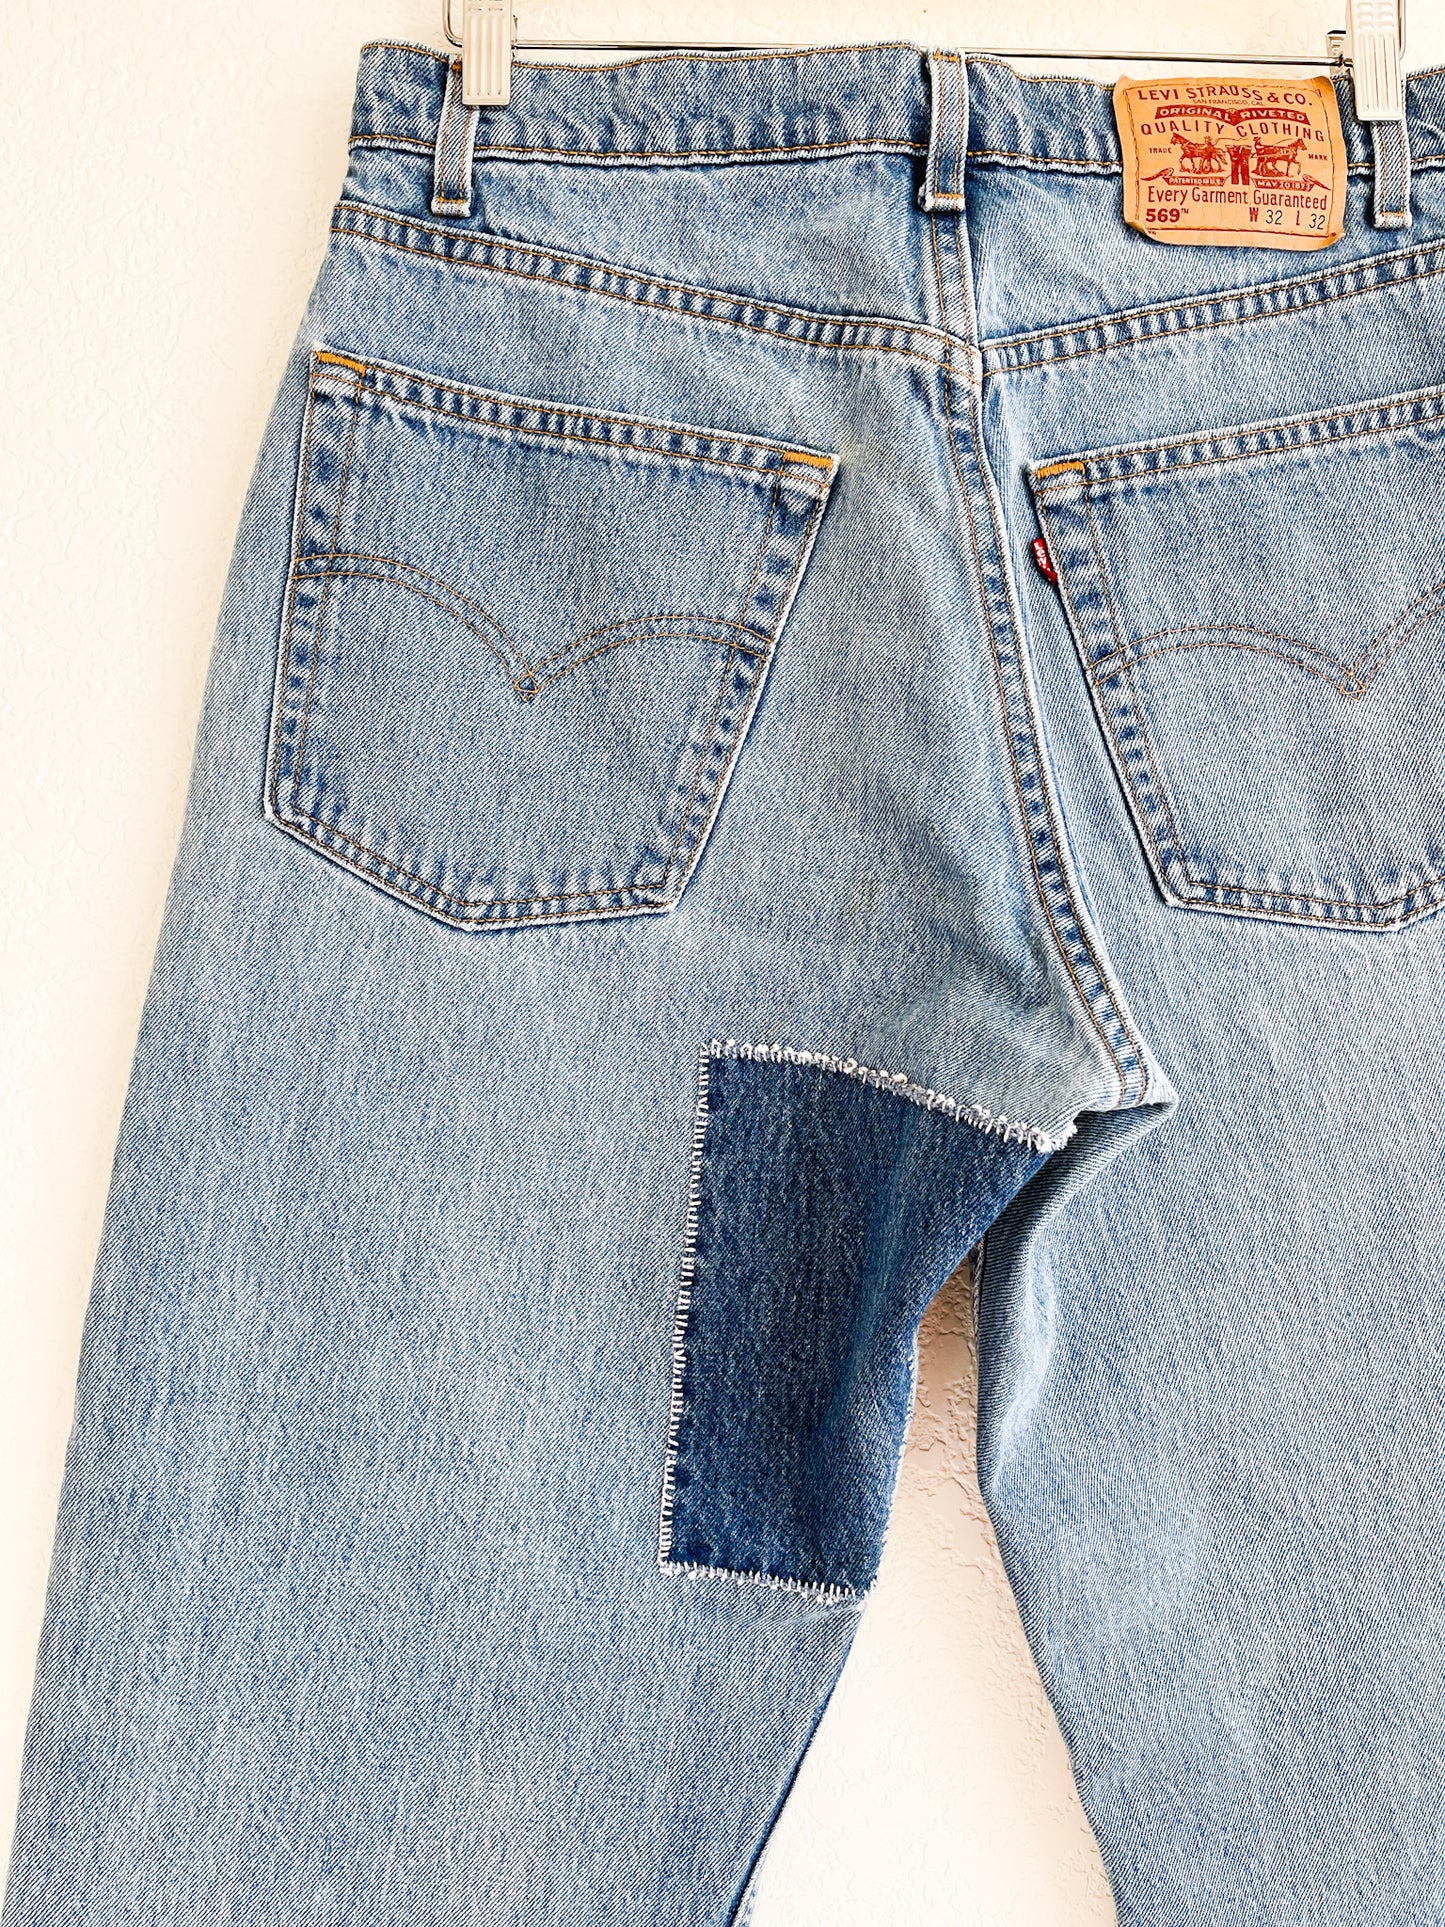 Vintage Levi's Jeans with Denim Patchwork Detail - 32" Waist